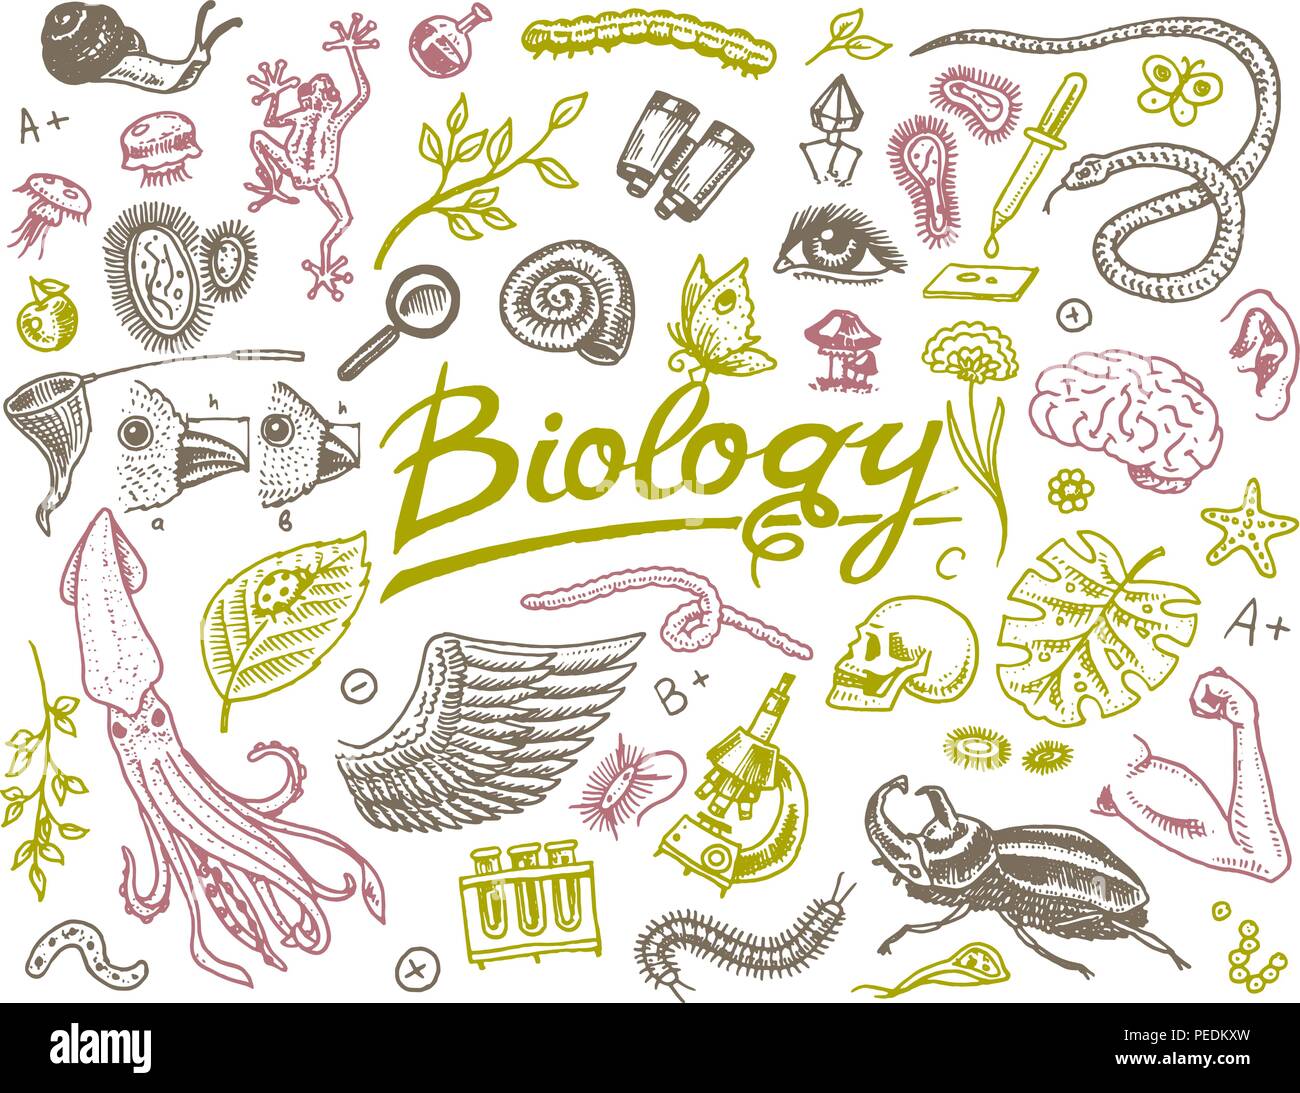 Laboratorio científico en biología. Conjunto de iconos de investigación  bioquímica. Las moléculas de los organismos vivientes. En la escuela de  medicina. La educación y la ciencia. grabado dibujado a mano en el